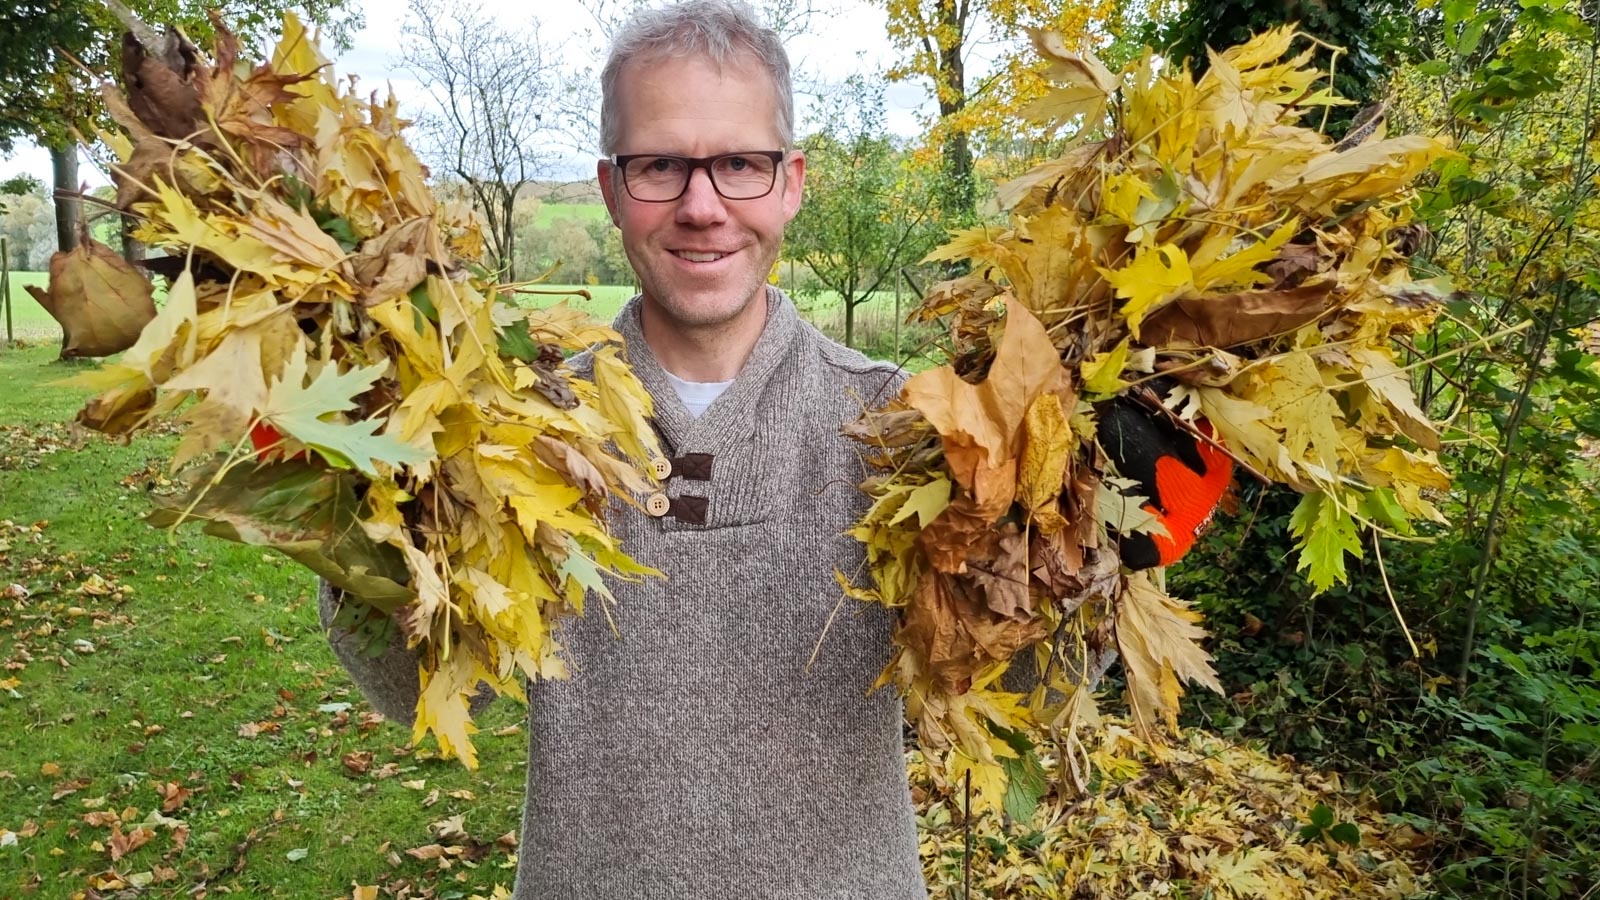 Halbtotale von Gartenberater Philippe Dahlmann, der mit beiden Händen Herbstlaub in Richtung Kamera hält